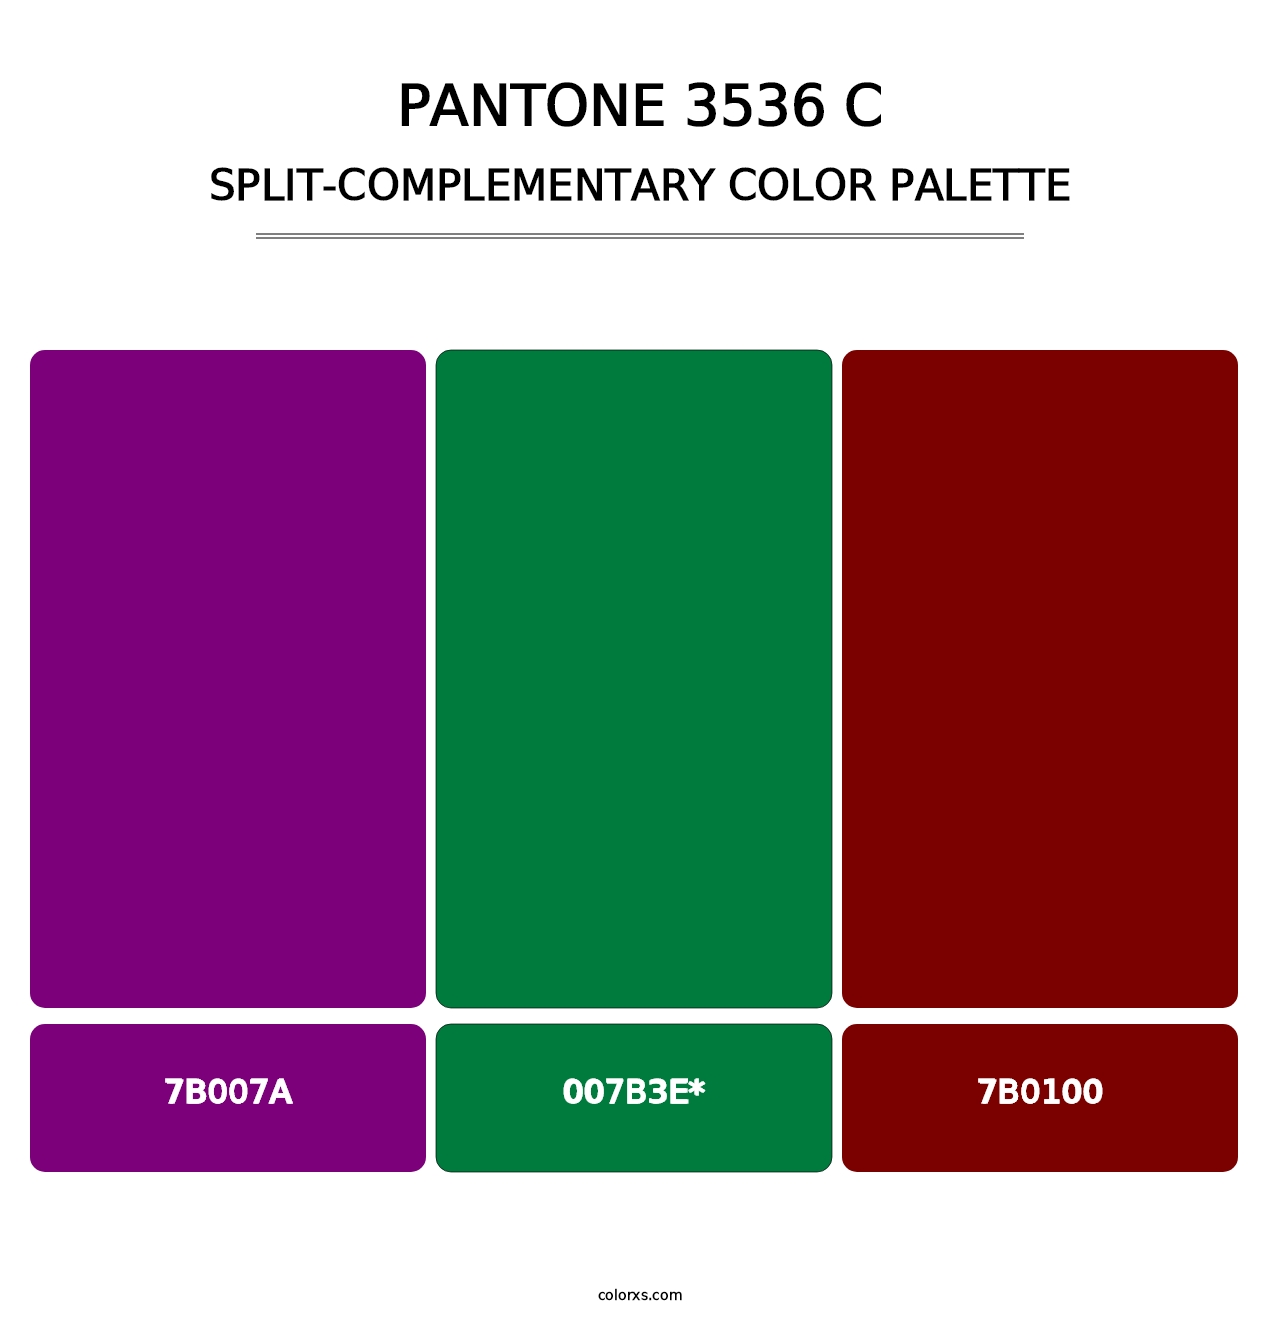 PANTONE 3536 C - Split-Complementary Color Palette